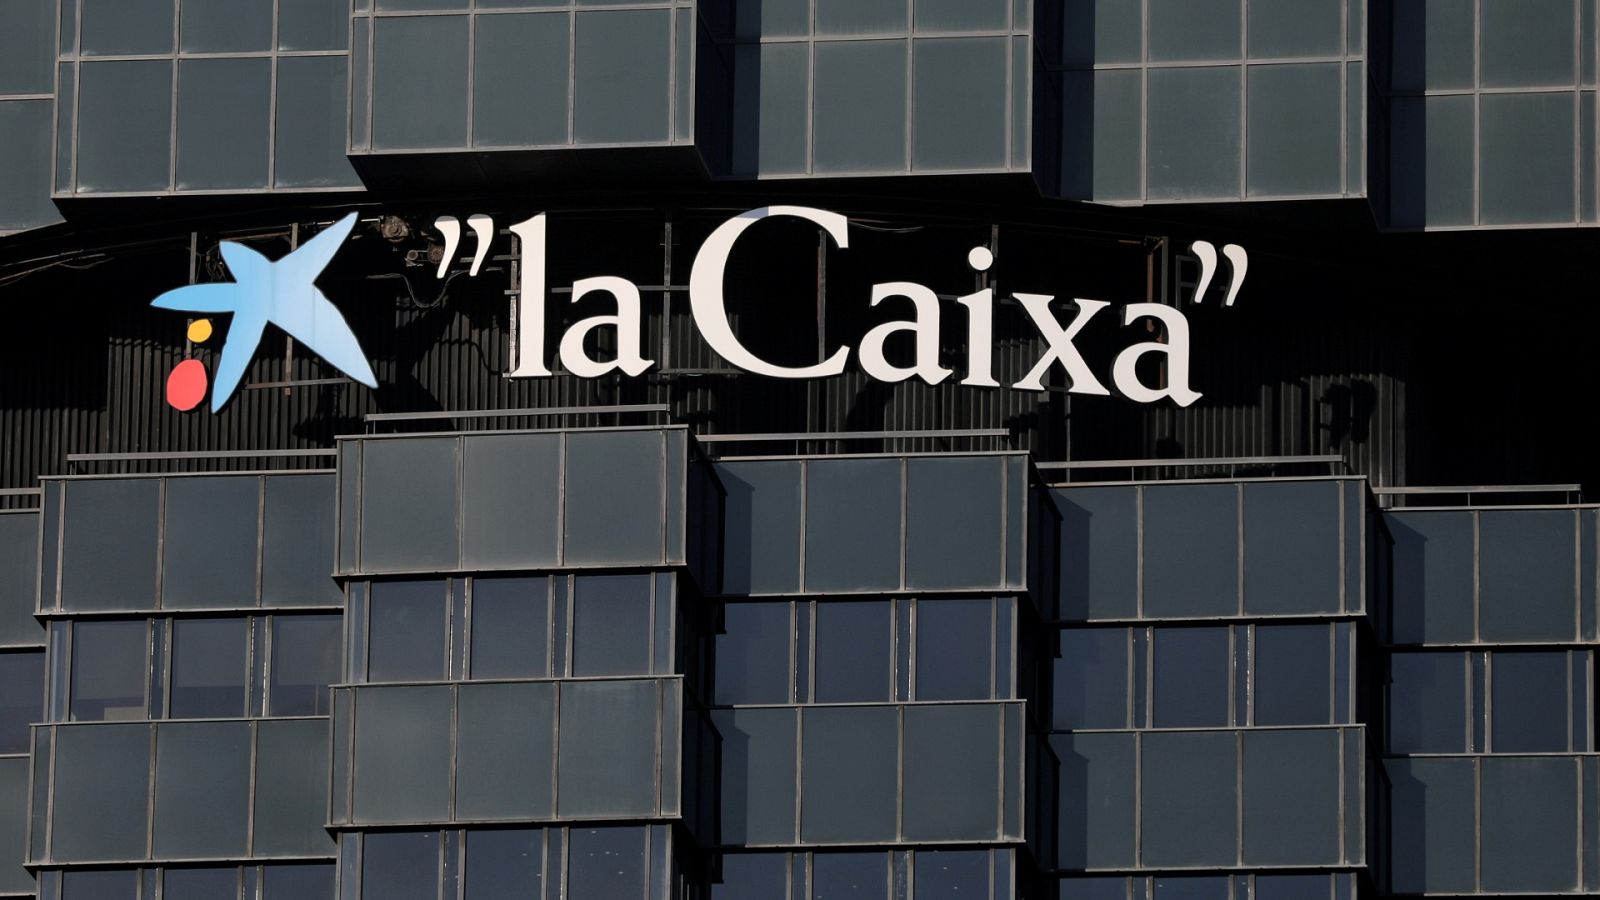 Fusión Caixabank-Bankia  Cuántas oficinas tienen Bankia y